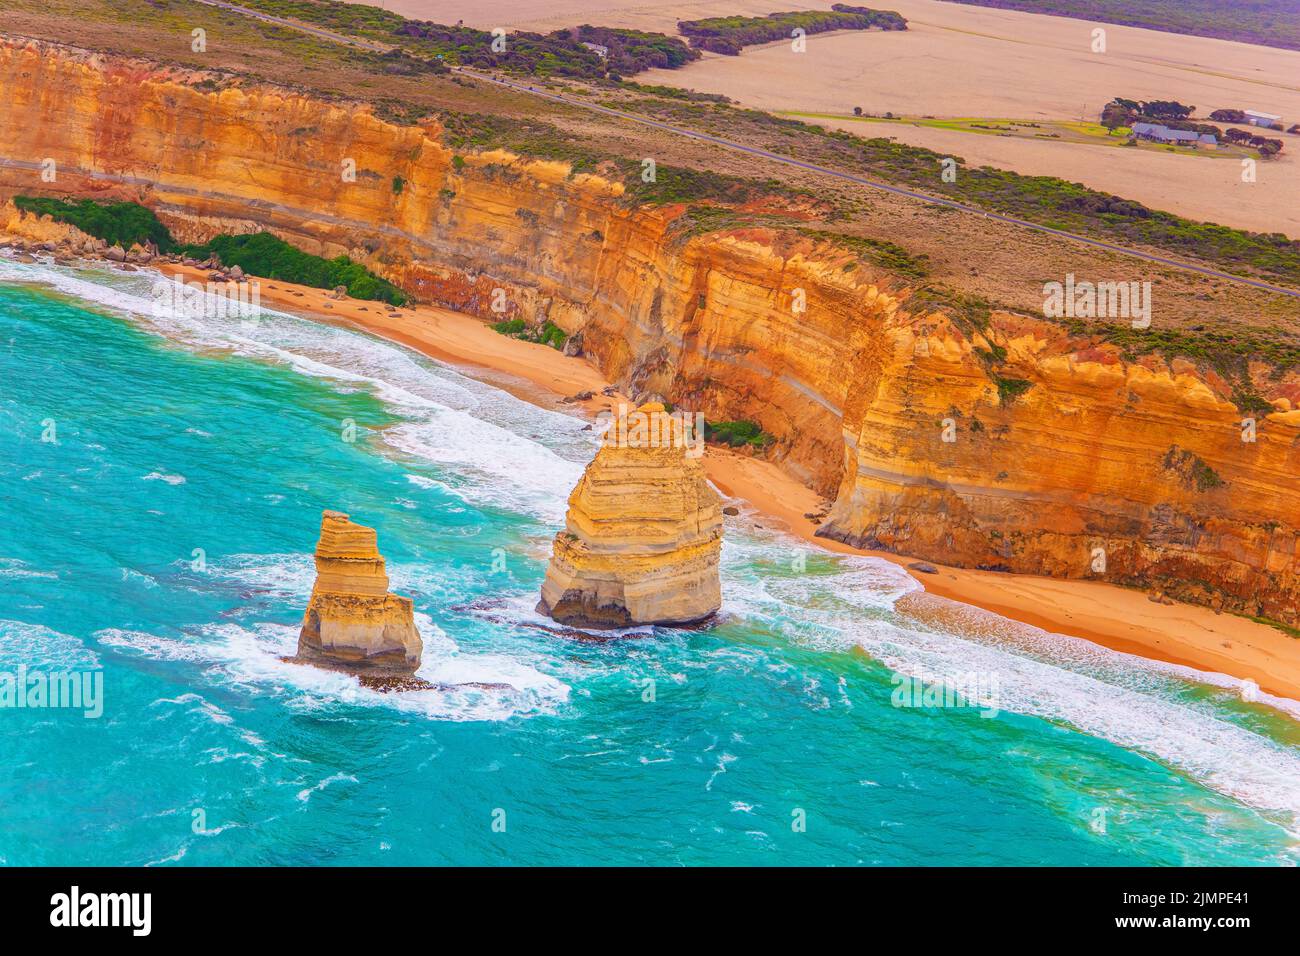 Aerial view. Australia. Stock Photo